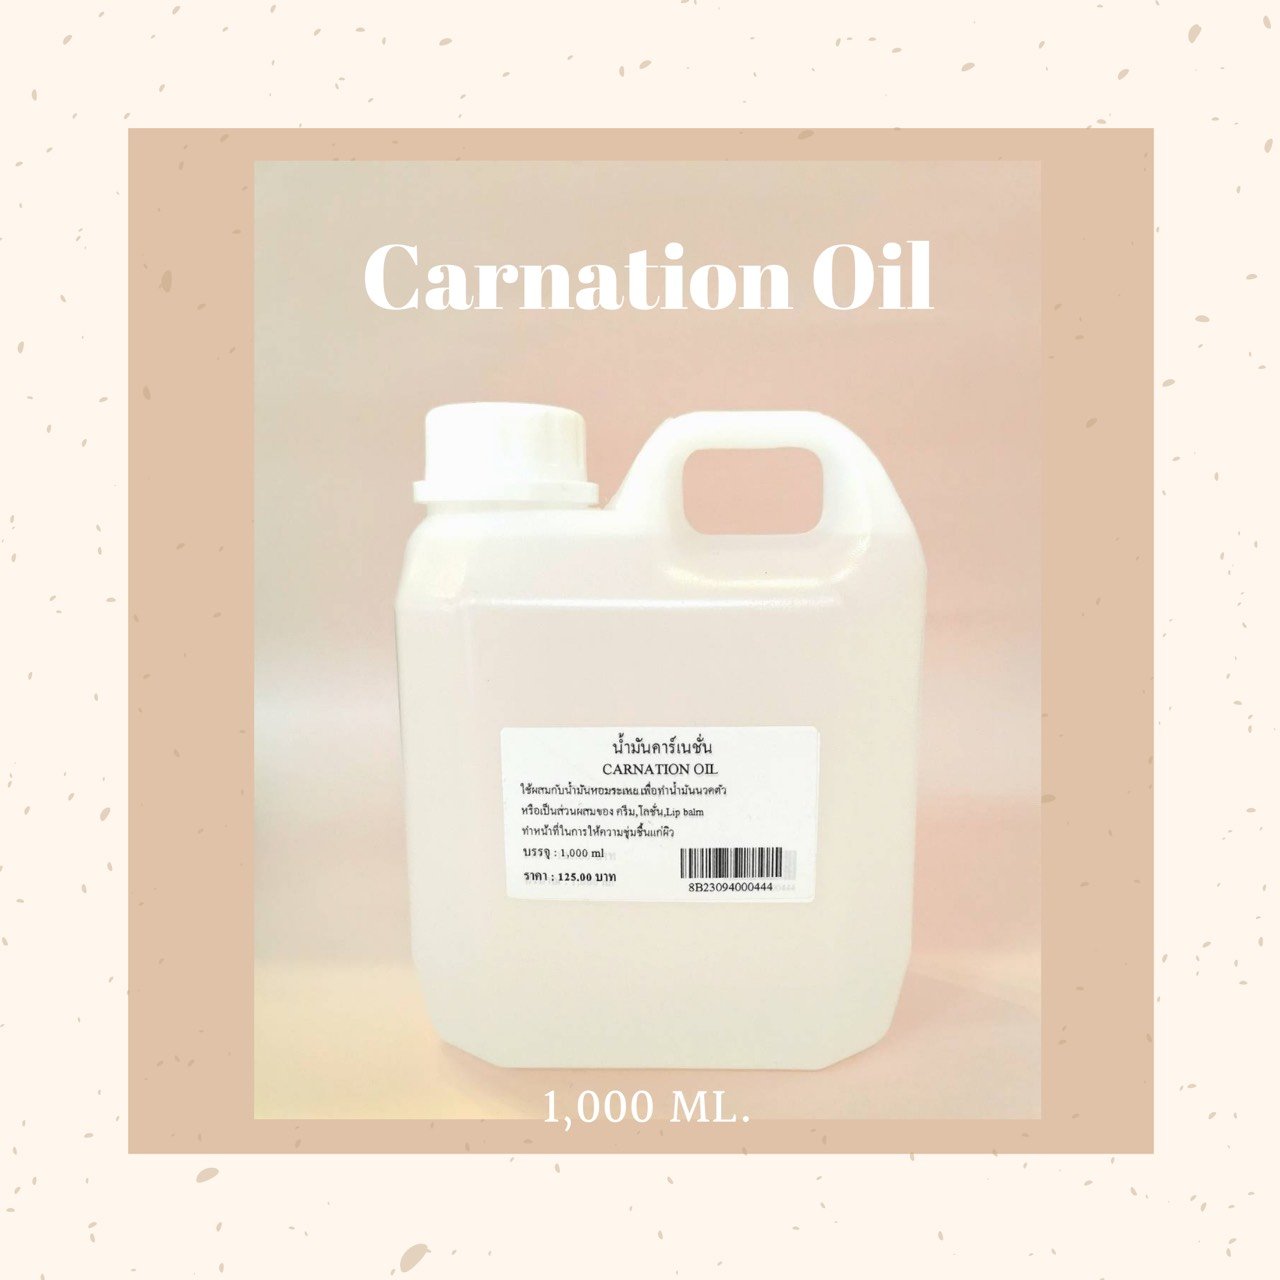 CARNATION OIL